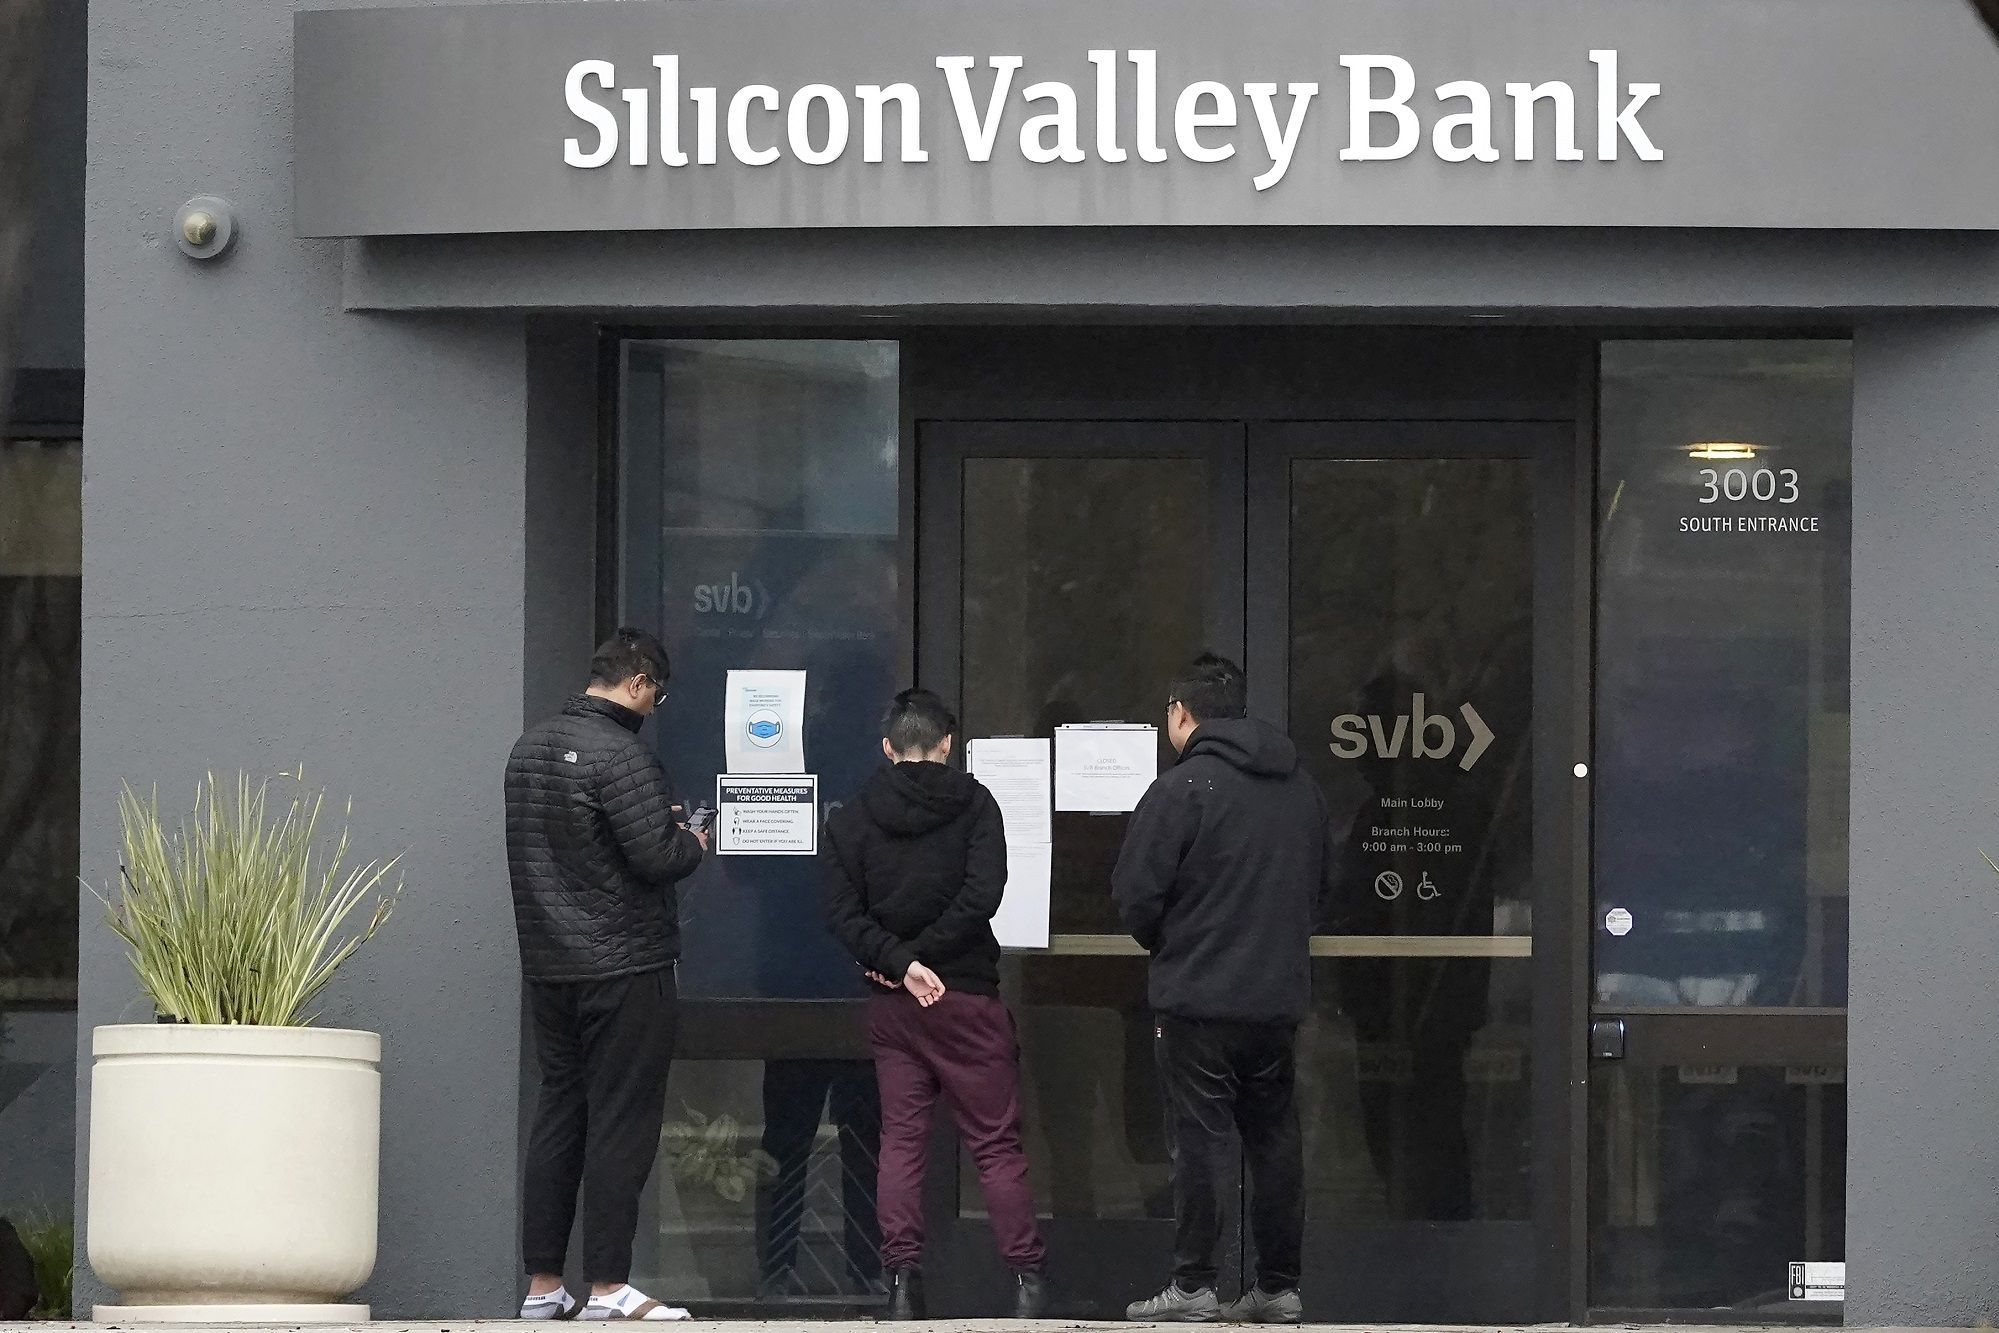 Bank Silicon Valley Bangkrut, Dana Nasabah Rp 2,7 Kuadriliun 